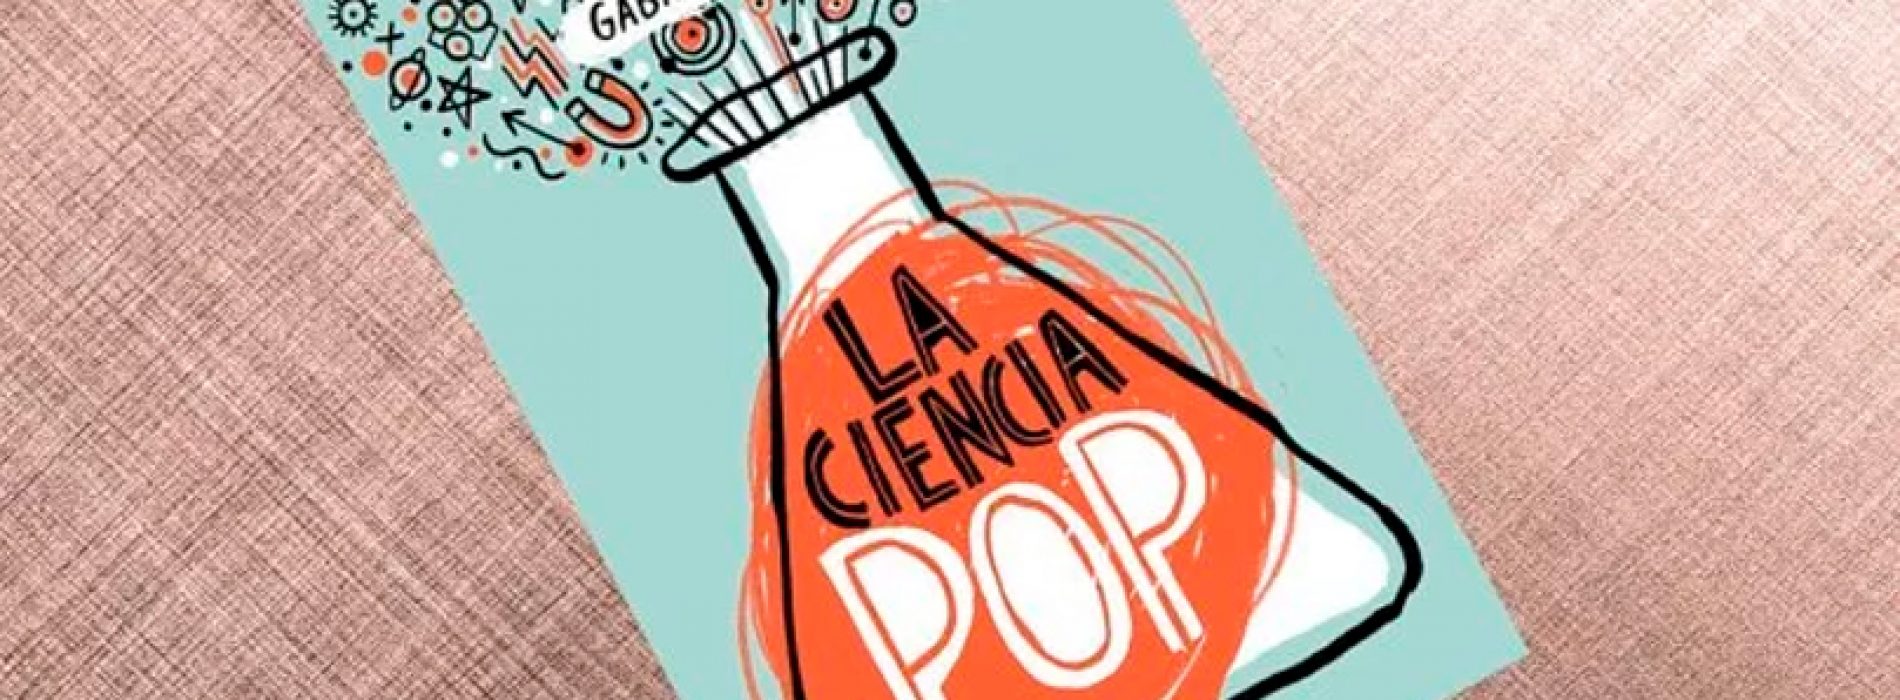 Gabriel León habla sobre su exitoso libro La Ciencia Pop: “La mejor lección es que sí hay un público interesado en la ciencia”